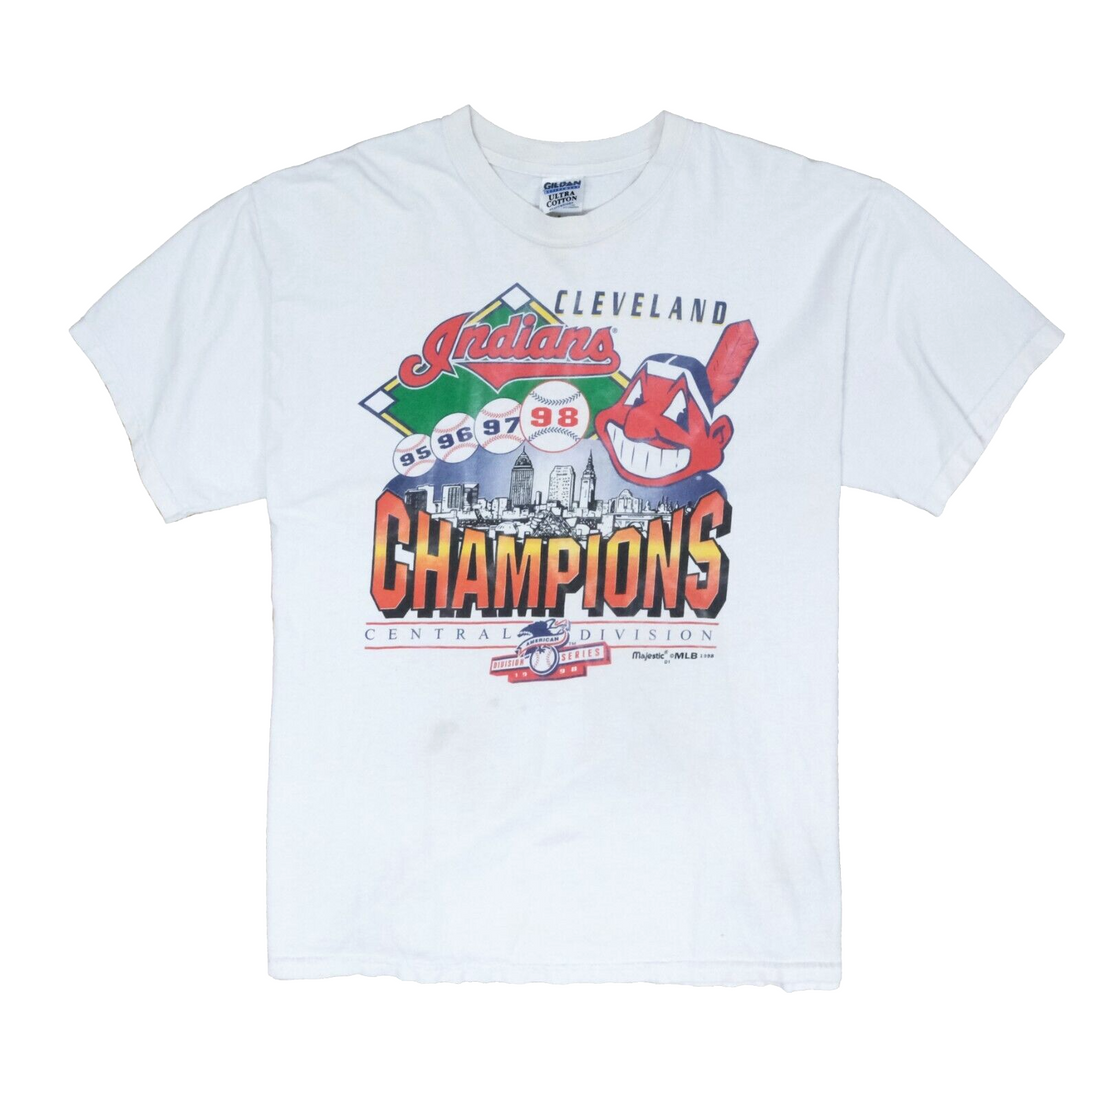 Vintage Cleveland Indians American League Champs T-Shirt Size XL